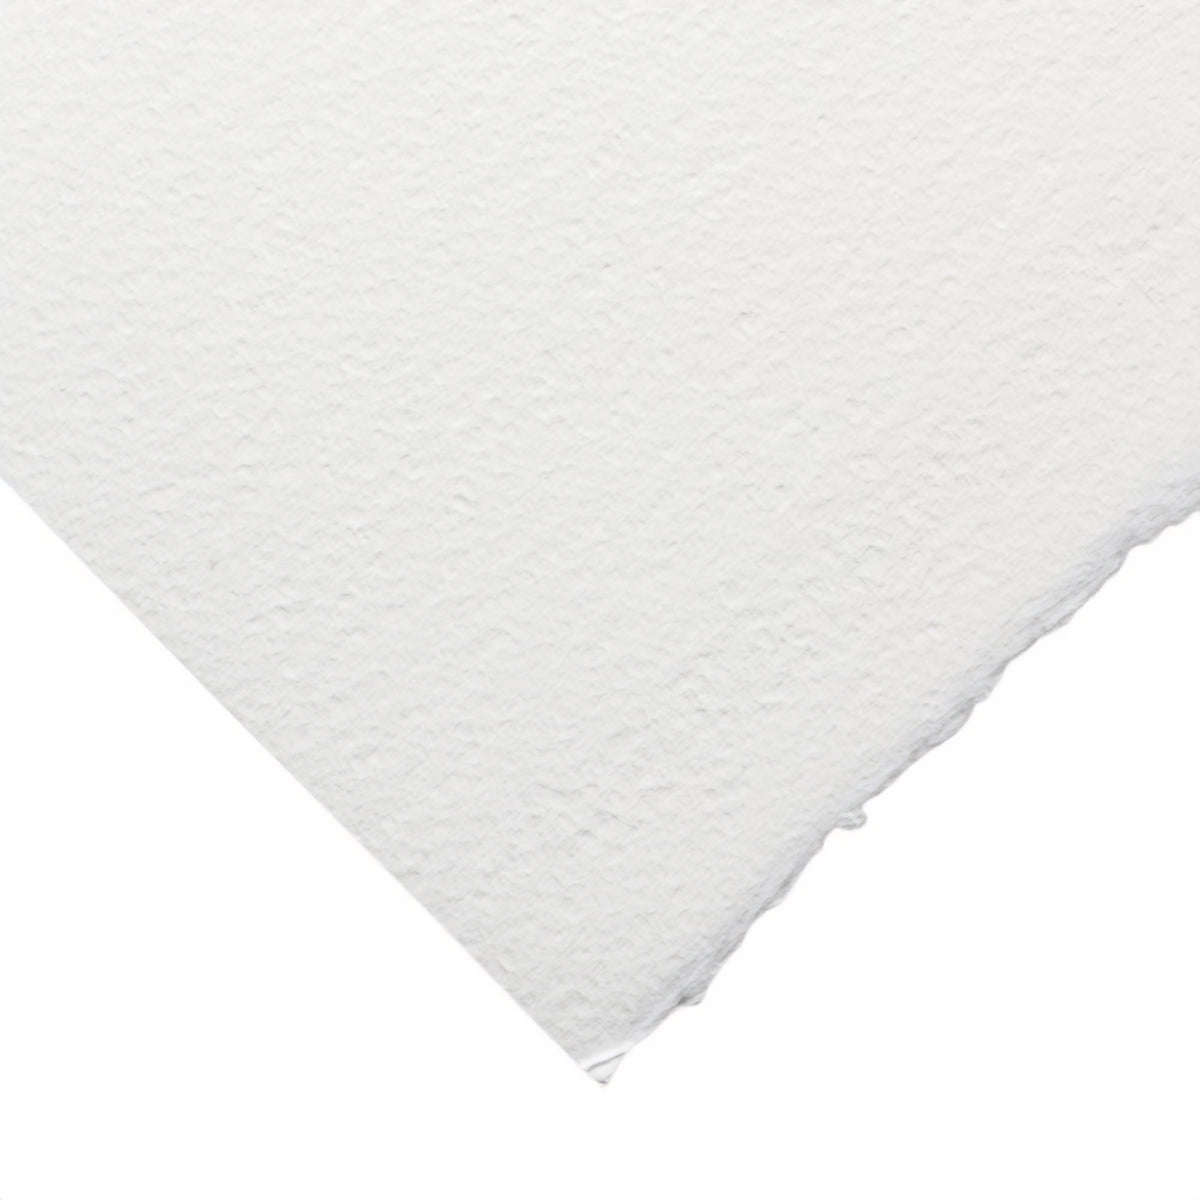 Fabriano Artistico Extra White Watercolour Roll 300gsm - Rough